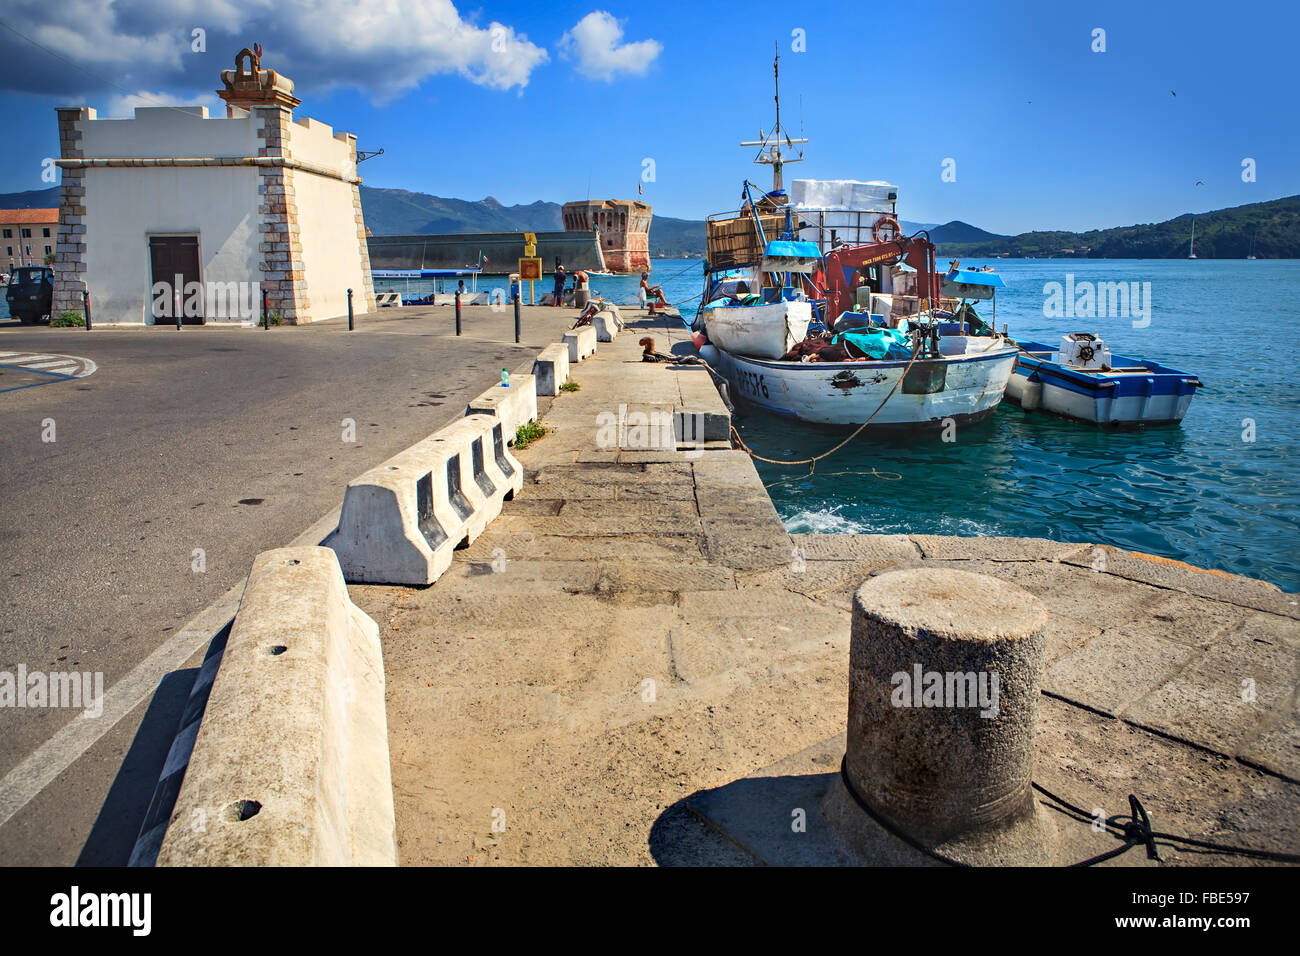 PORTOFERAIO, Insel ELBA, Italien - ca. AUGUST 2011: Der Hafen und Straßen in Portoferraio Stockfoto